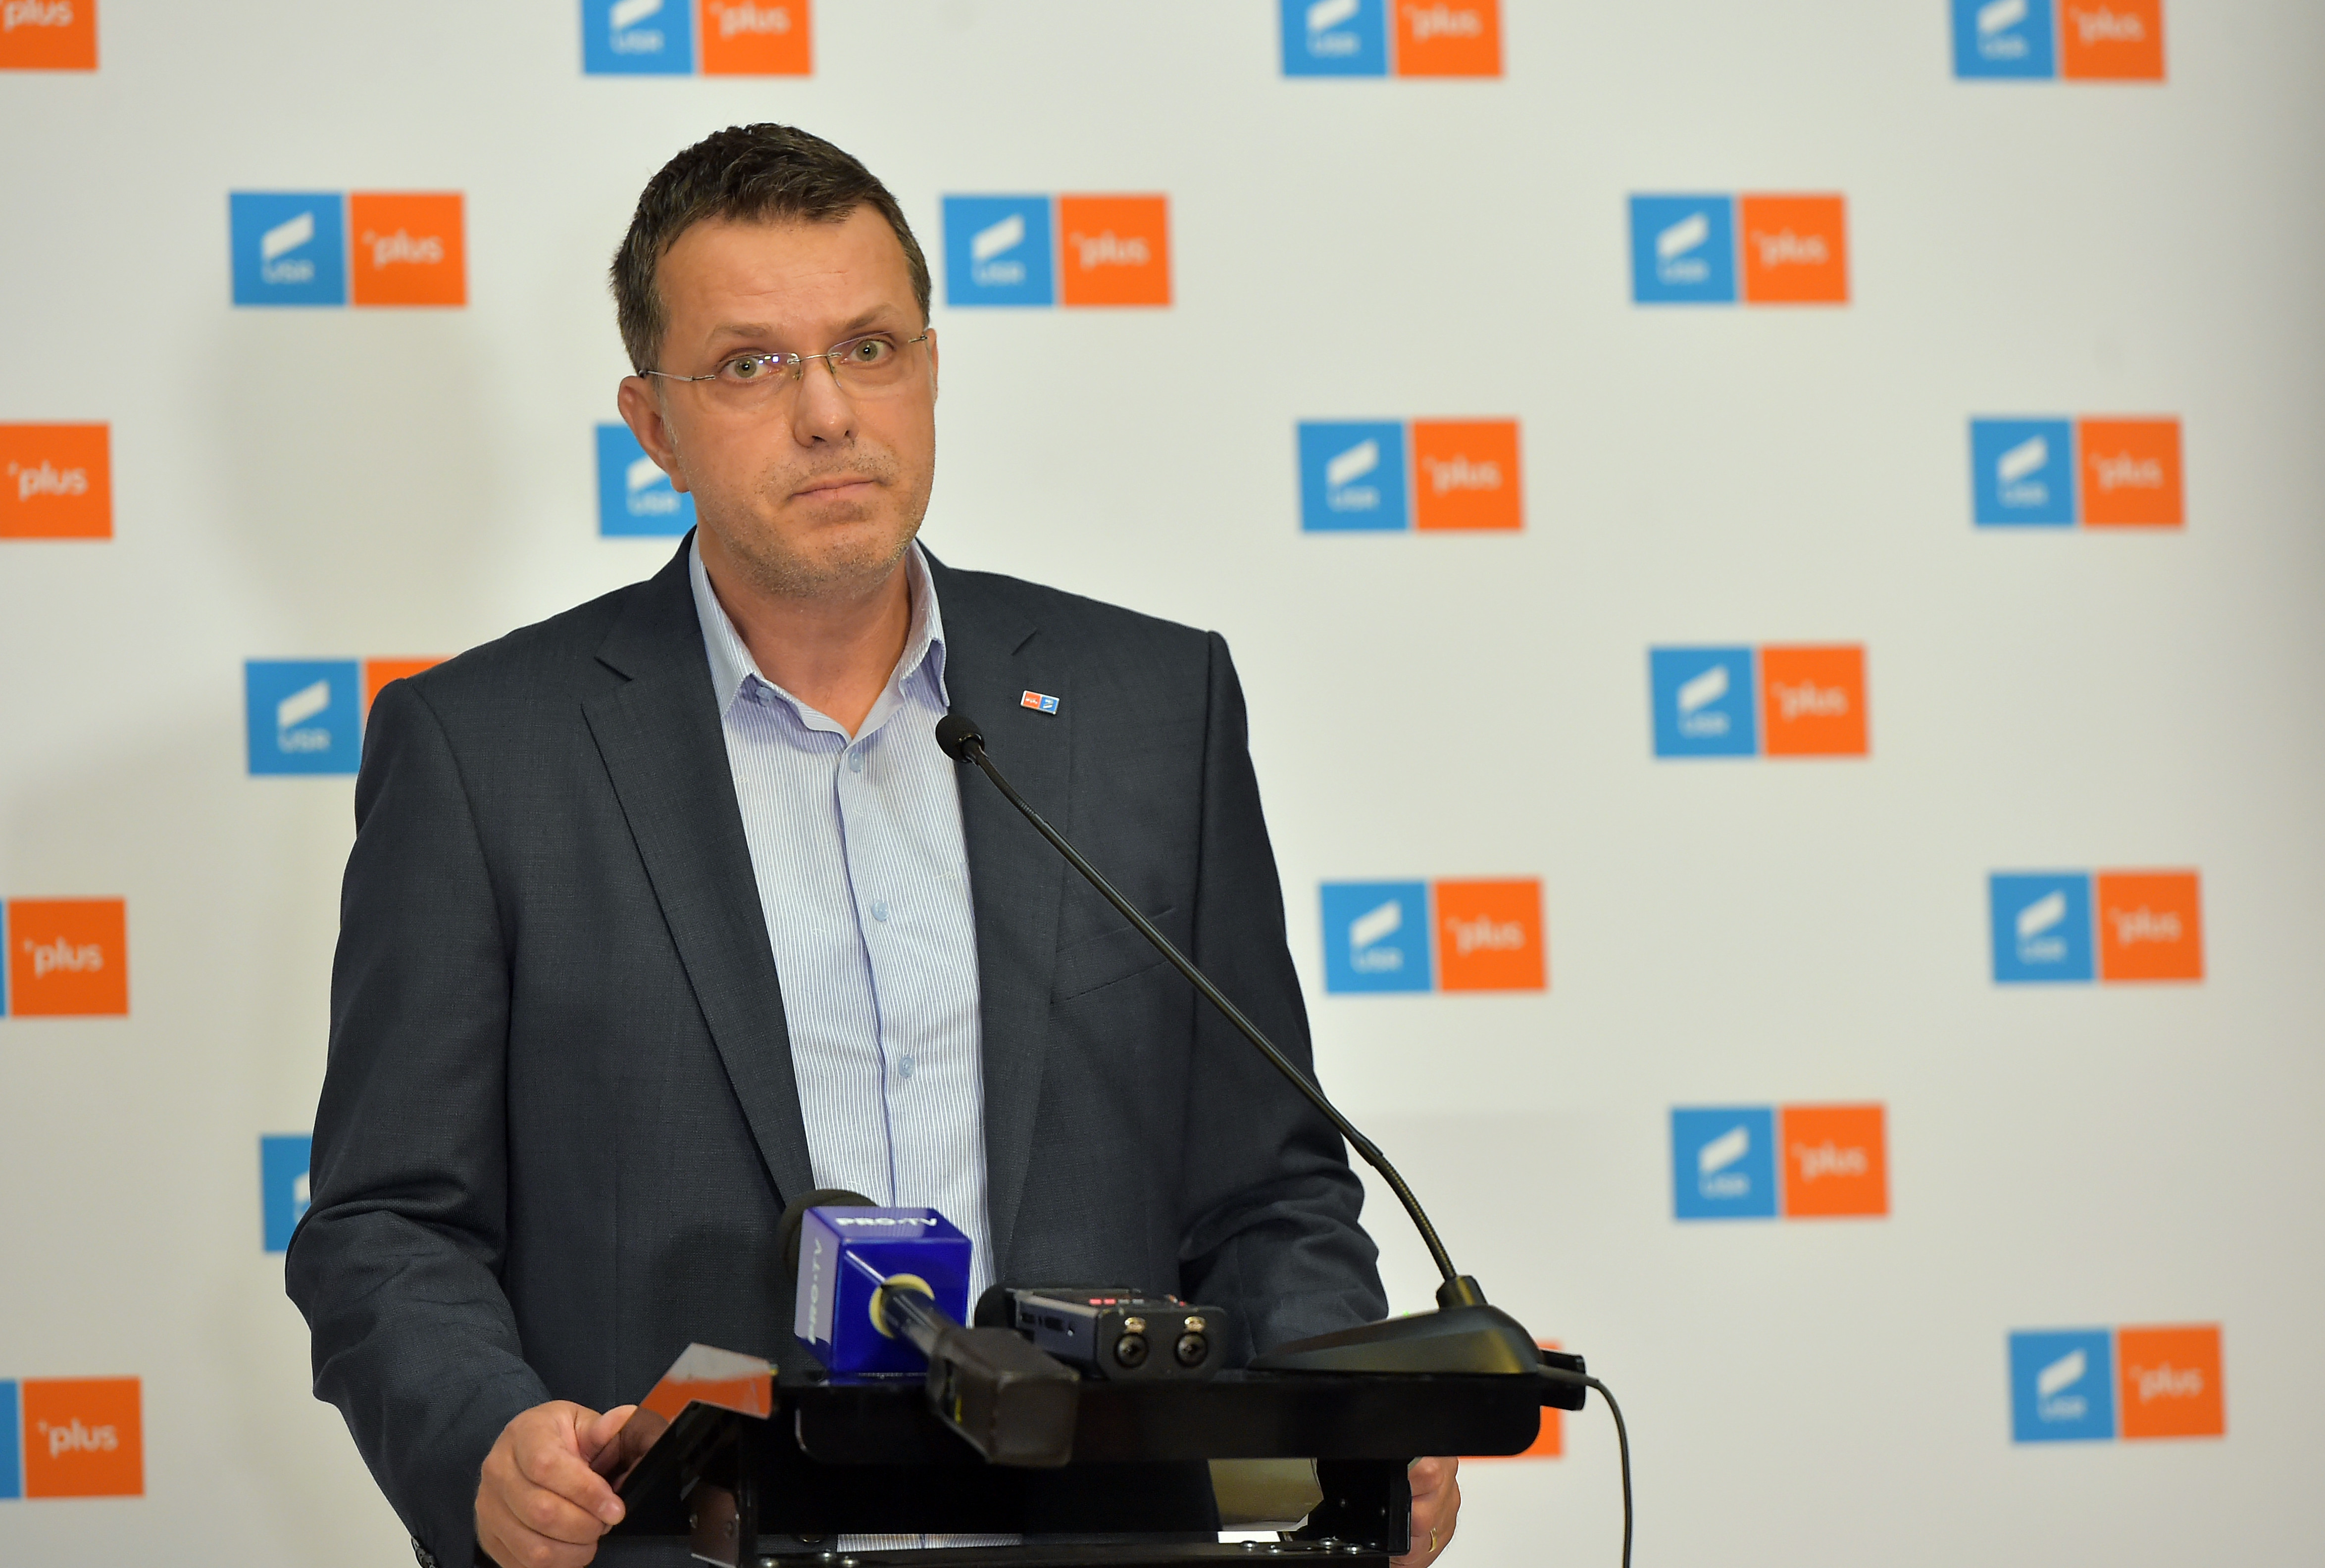 Moşteanu: „USR aşteaptă ca PNL să spună că doreşte refacerea coaliţiei. PNL trebuie să se decidă”